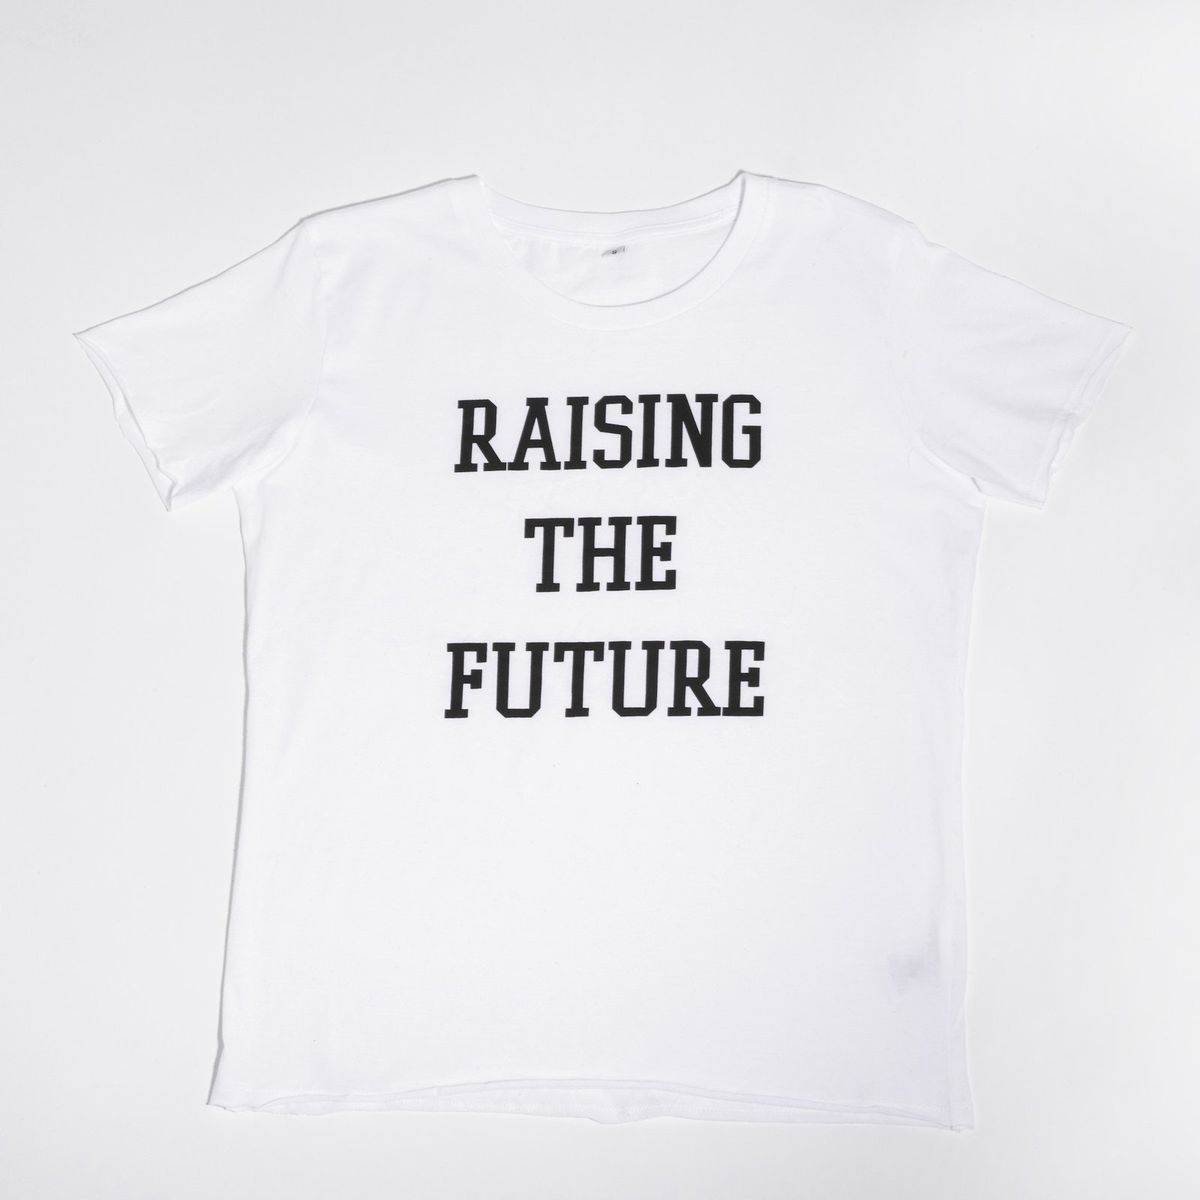 Saate endiselt osta Meghani T-särki 'Raising The Future'.